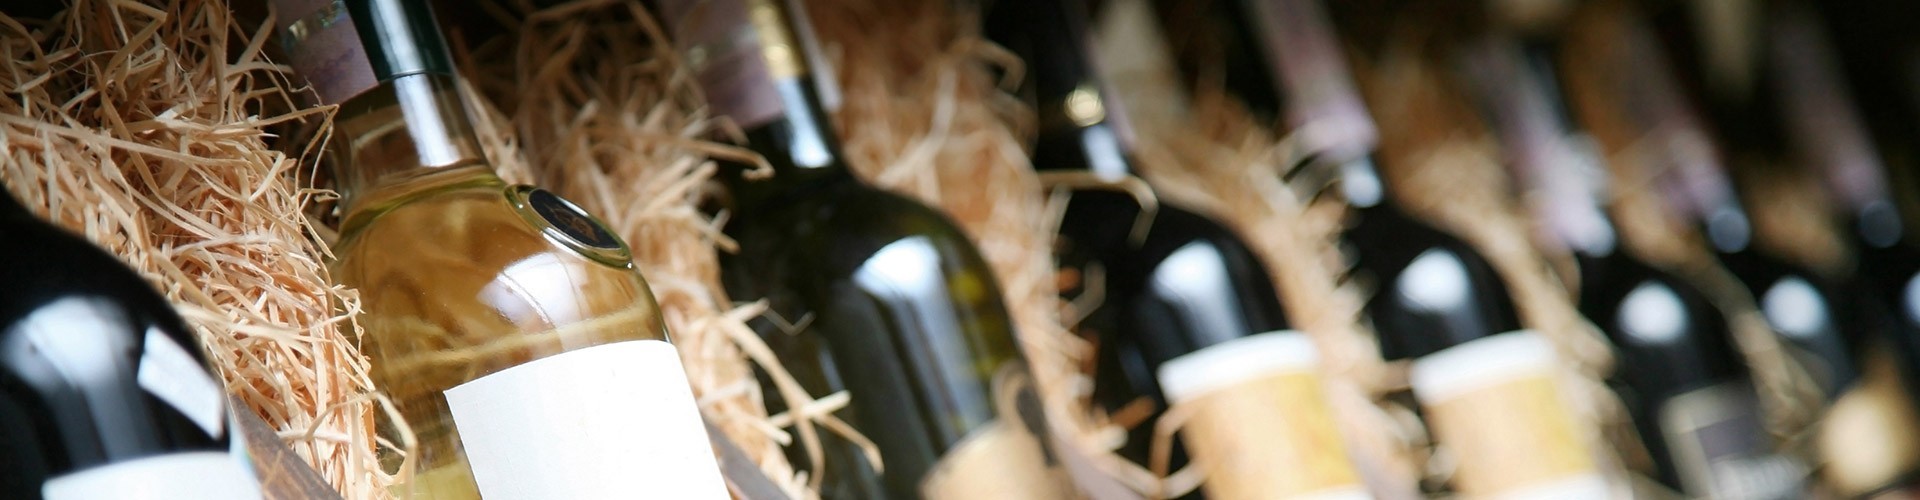 vendita vini italiani online bollicine spumanti e macerati